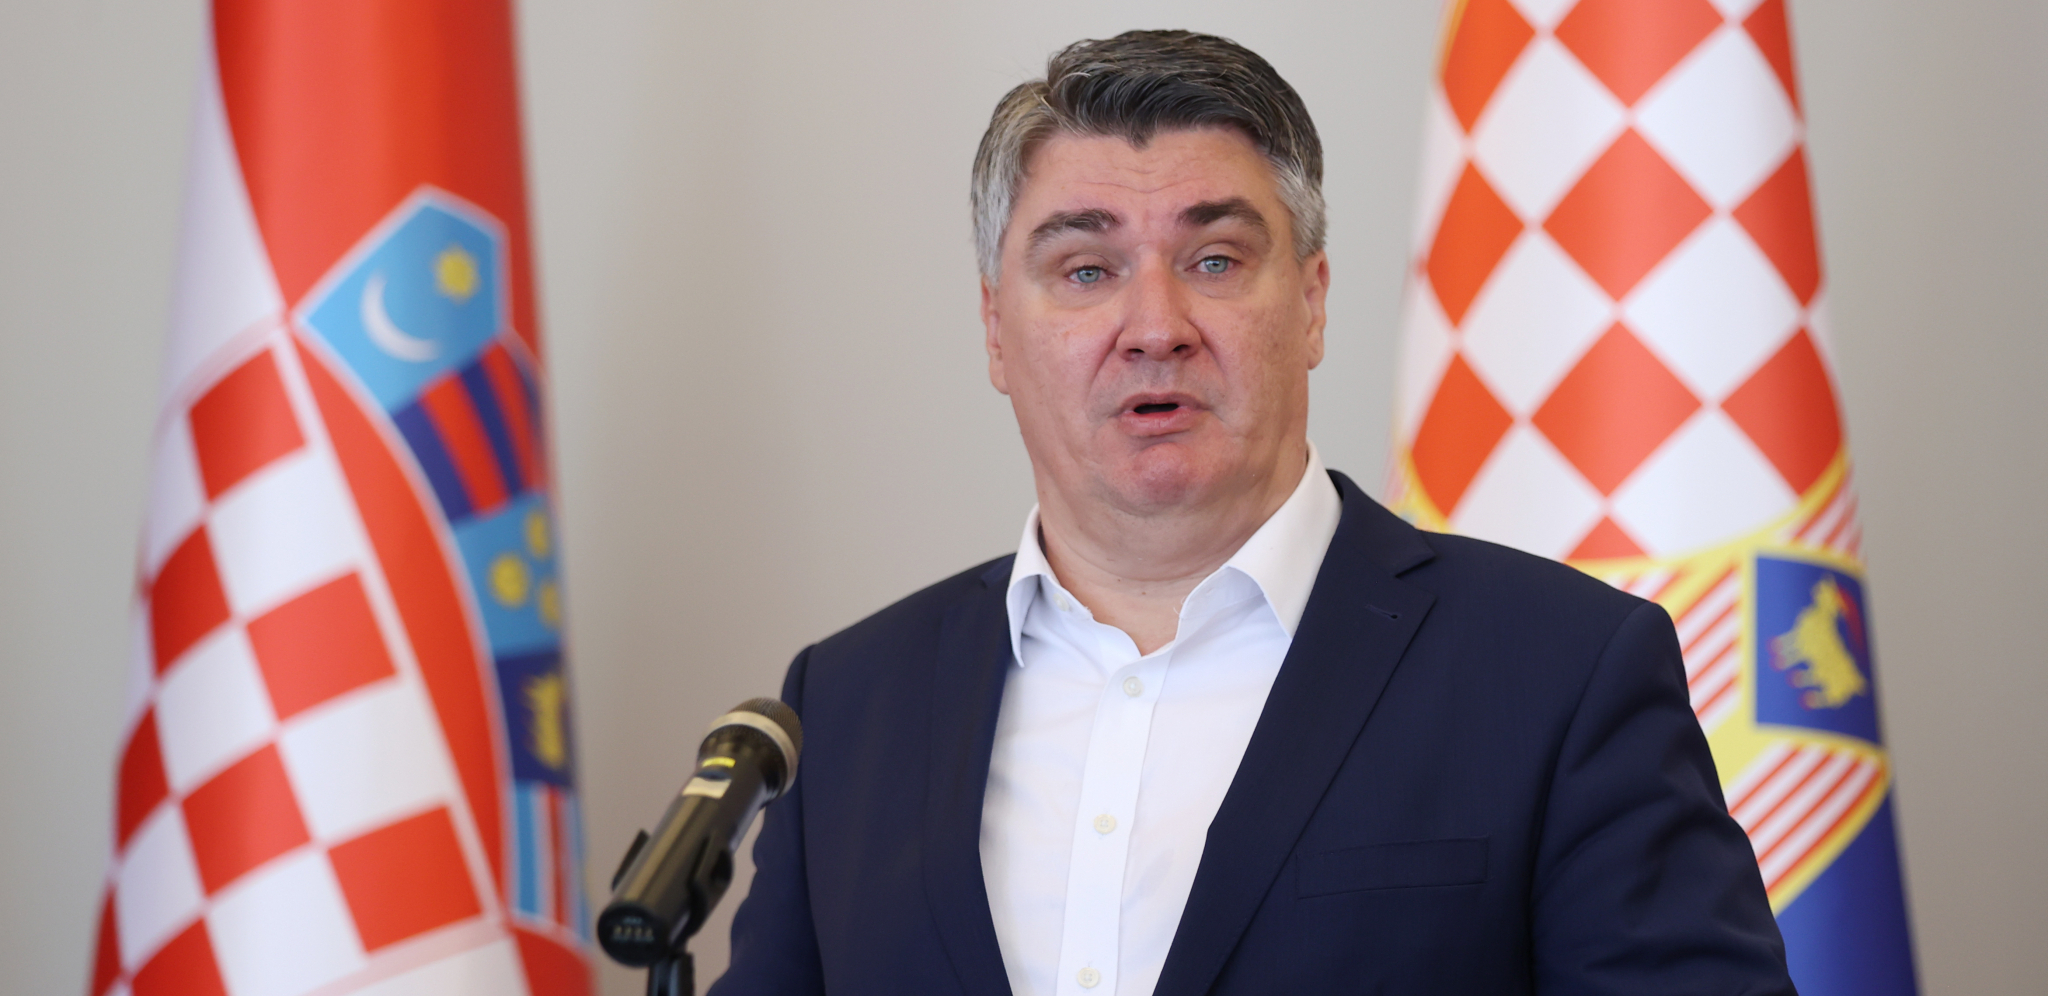 MILANOVIĆ NAPAO EVROPSKU UNIJU Predsednik Hrvatske osuo paljbu po svojim šefovima iz Brisela